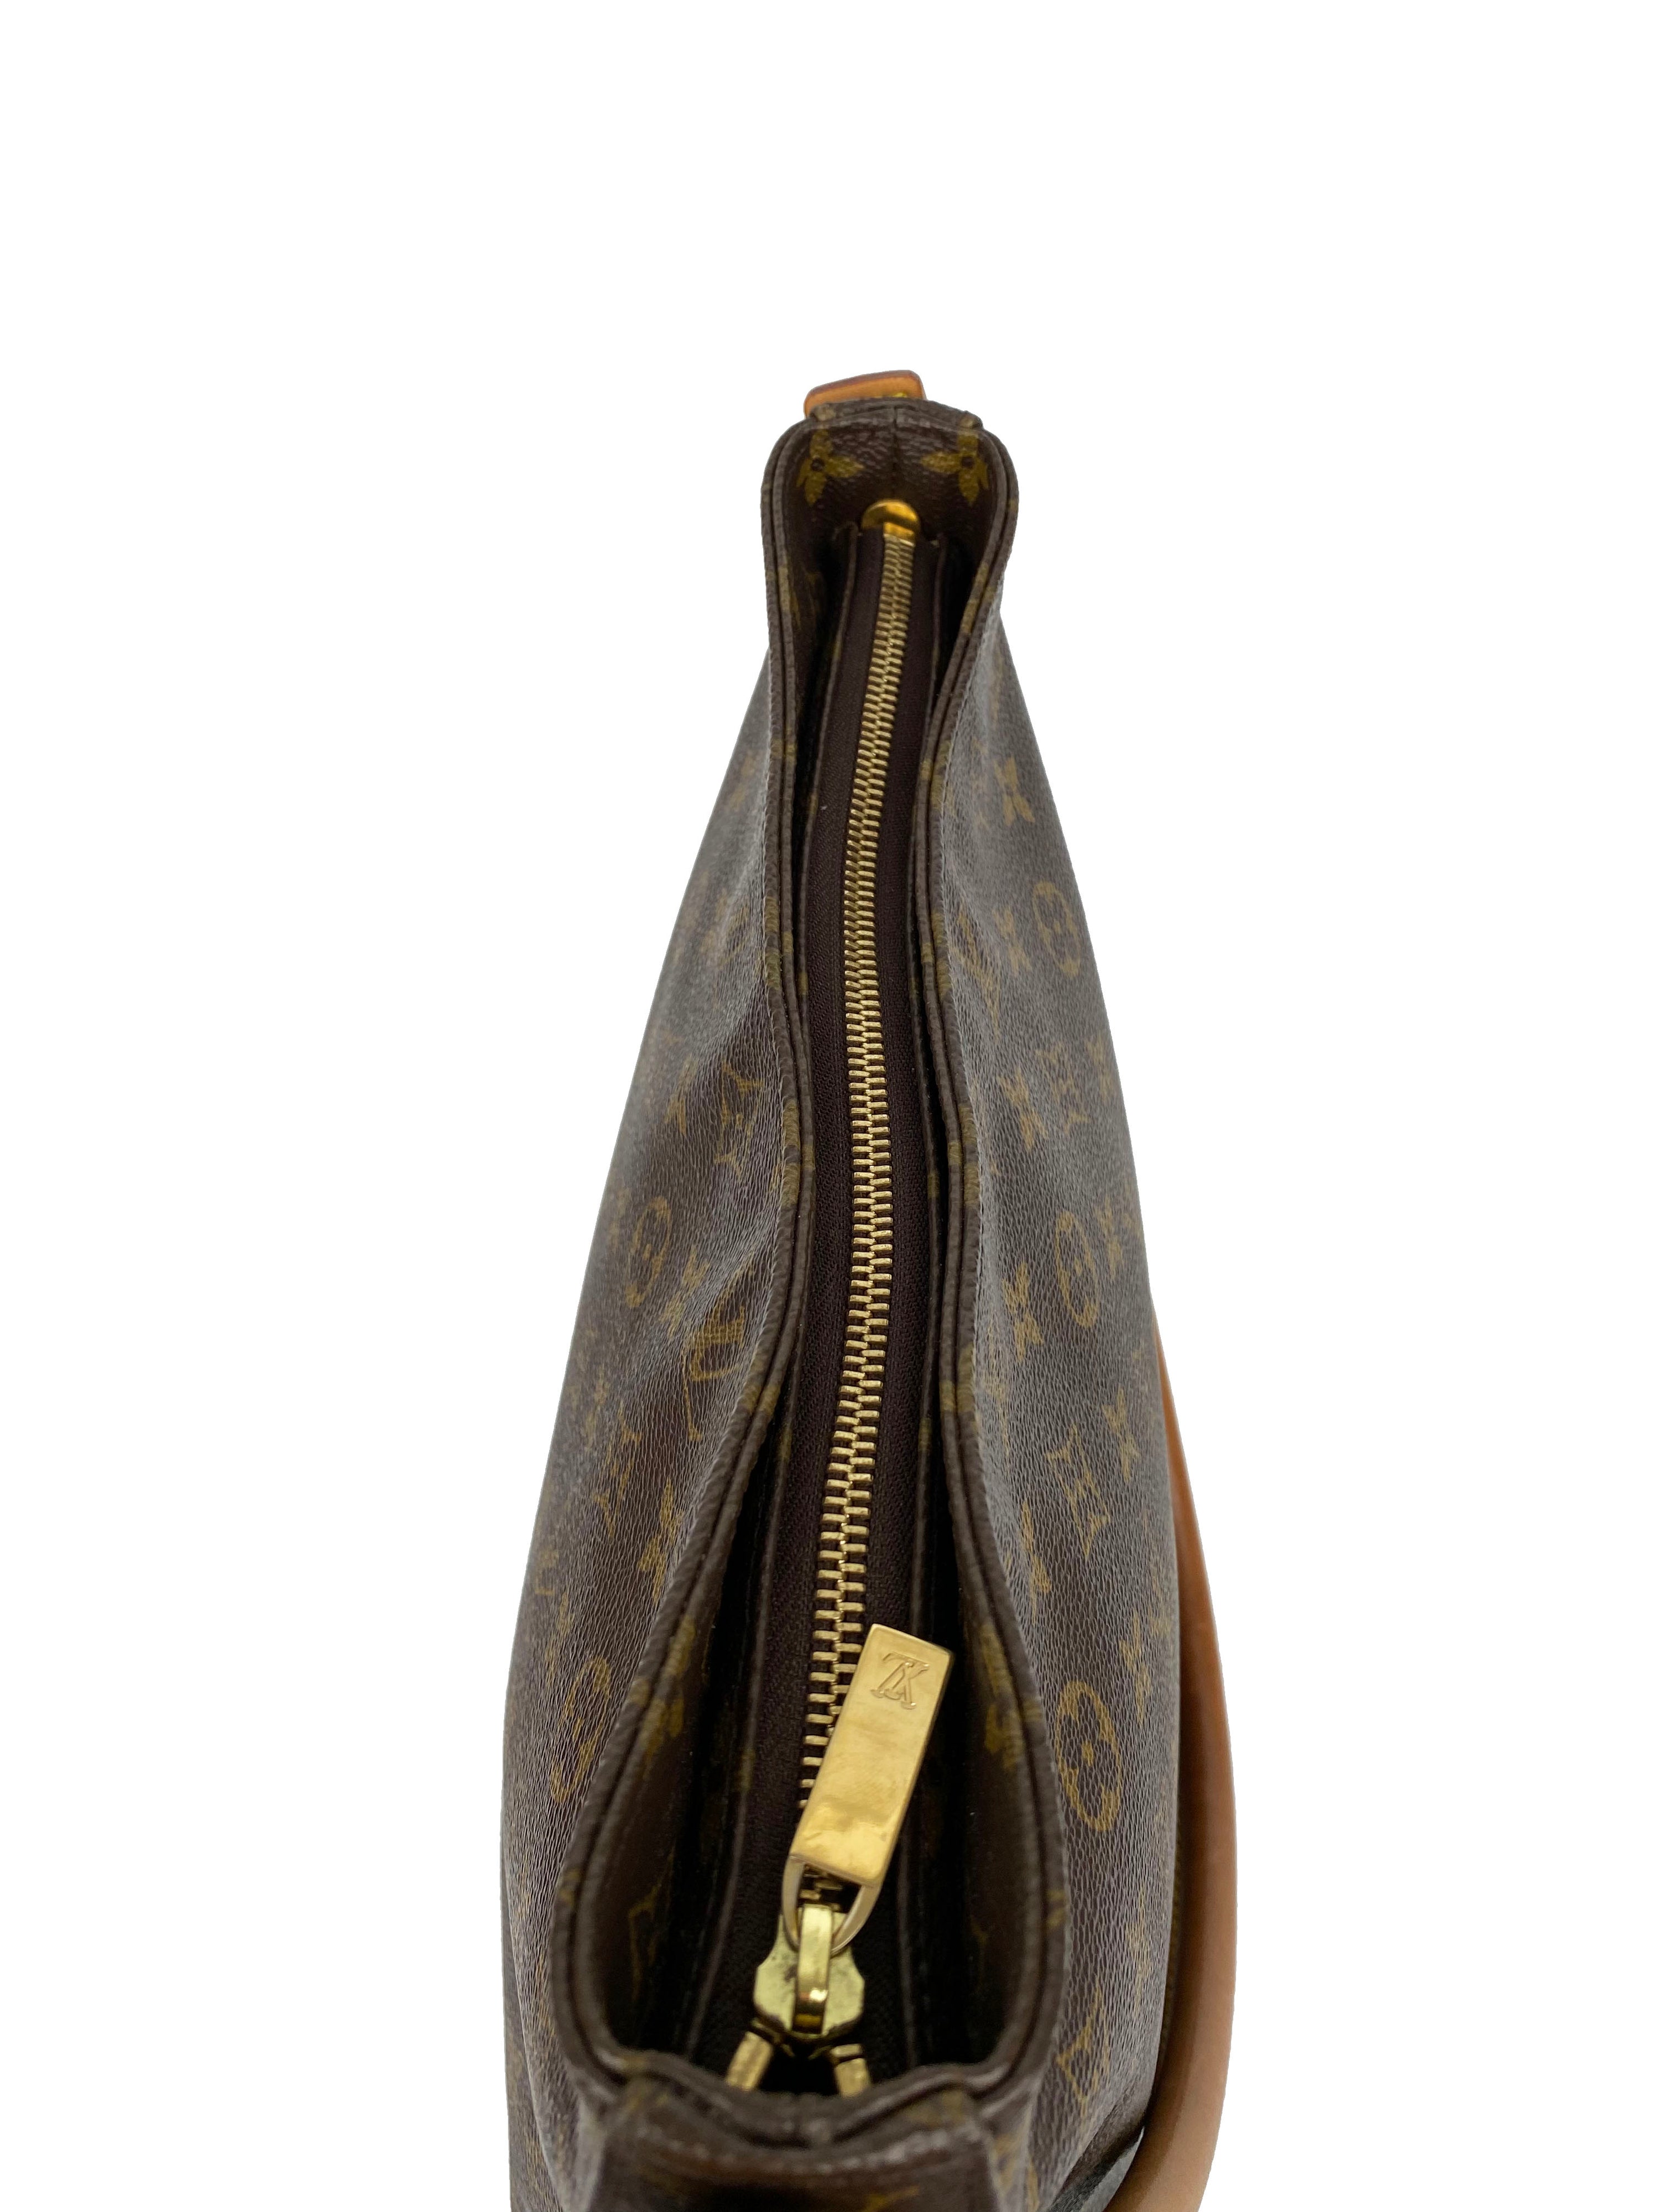 Louis Vuitton Vintage Monogram Top Handle Tote Bag